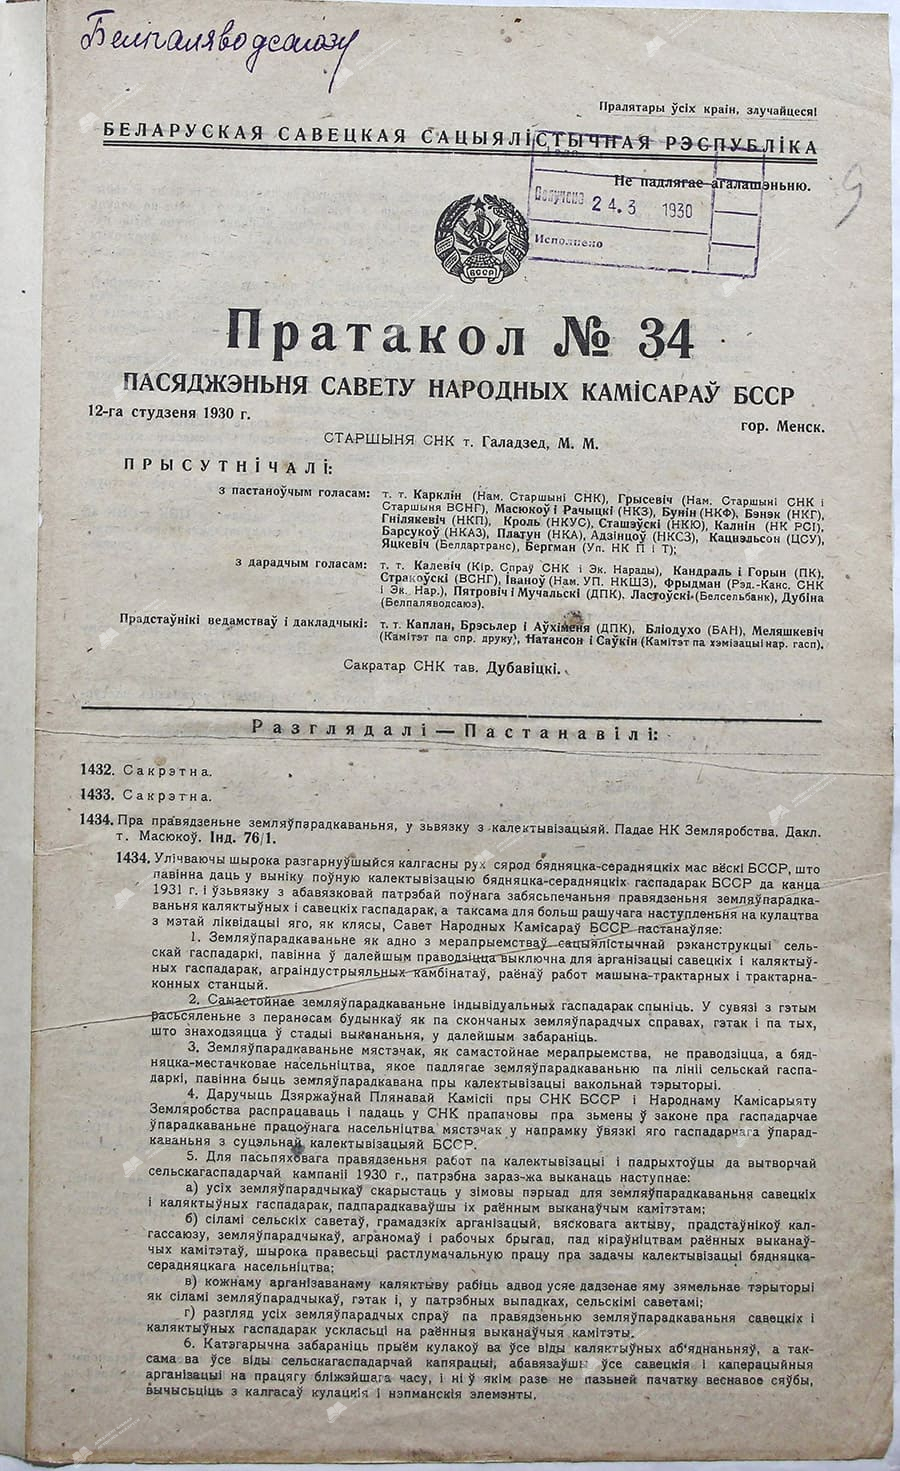 Протокол №34 заседания Совета Народных Комиссаров Белорусской ССР от 12 января 1930 г.-стр. 0